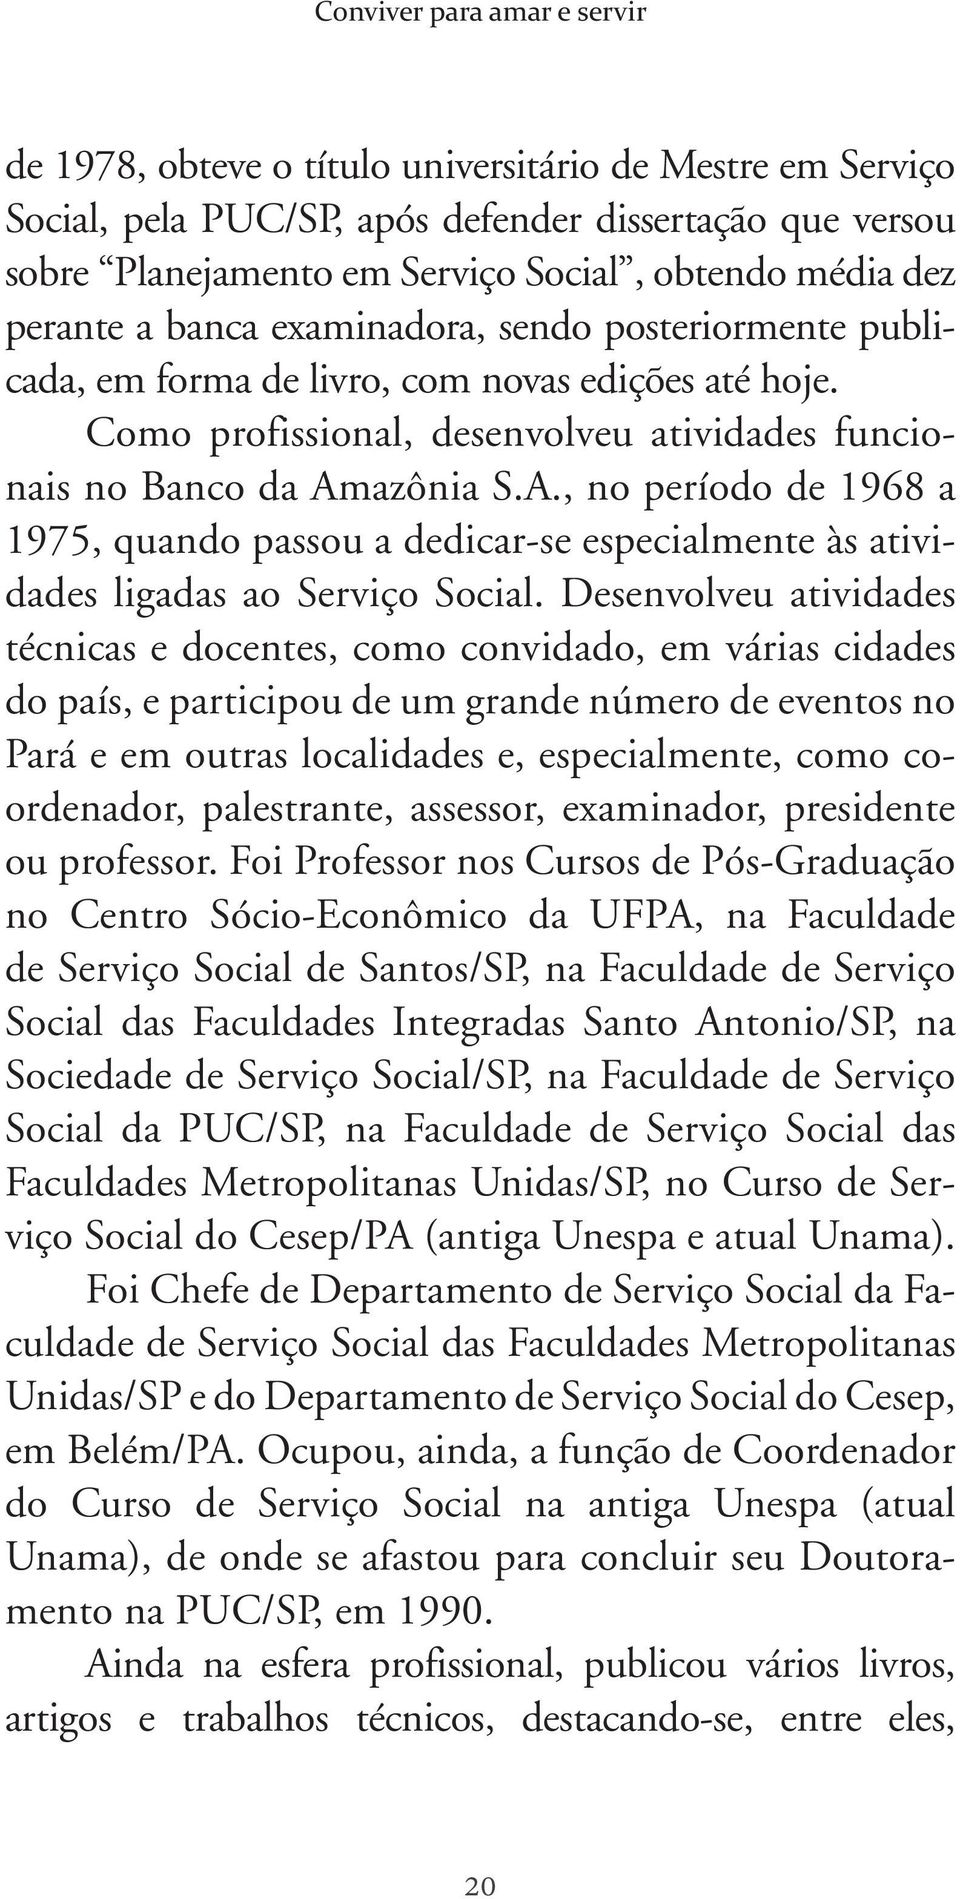 azônia S.A., no período de 1968 a 1975, quando passou a dedicar-se especialmente às atividades ligadas ao Serviço Social.